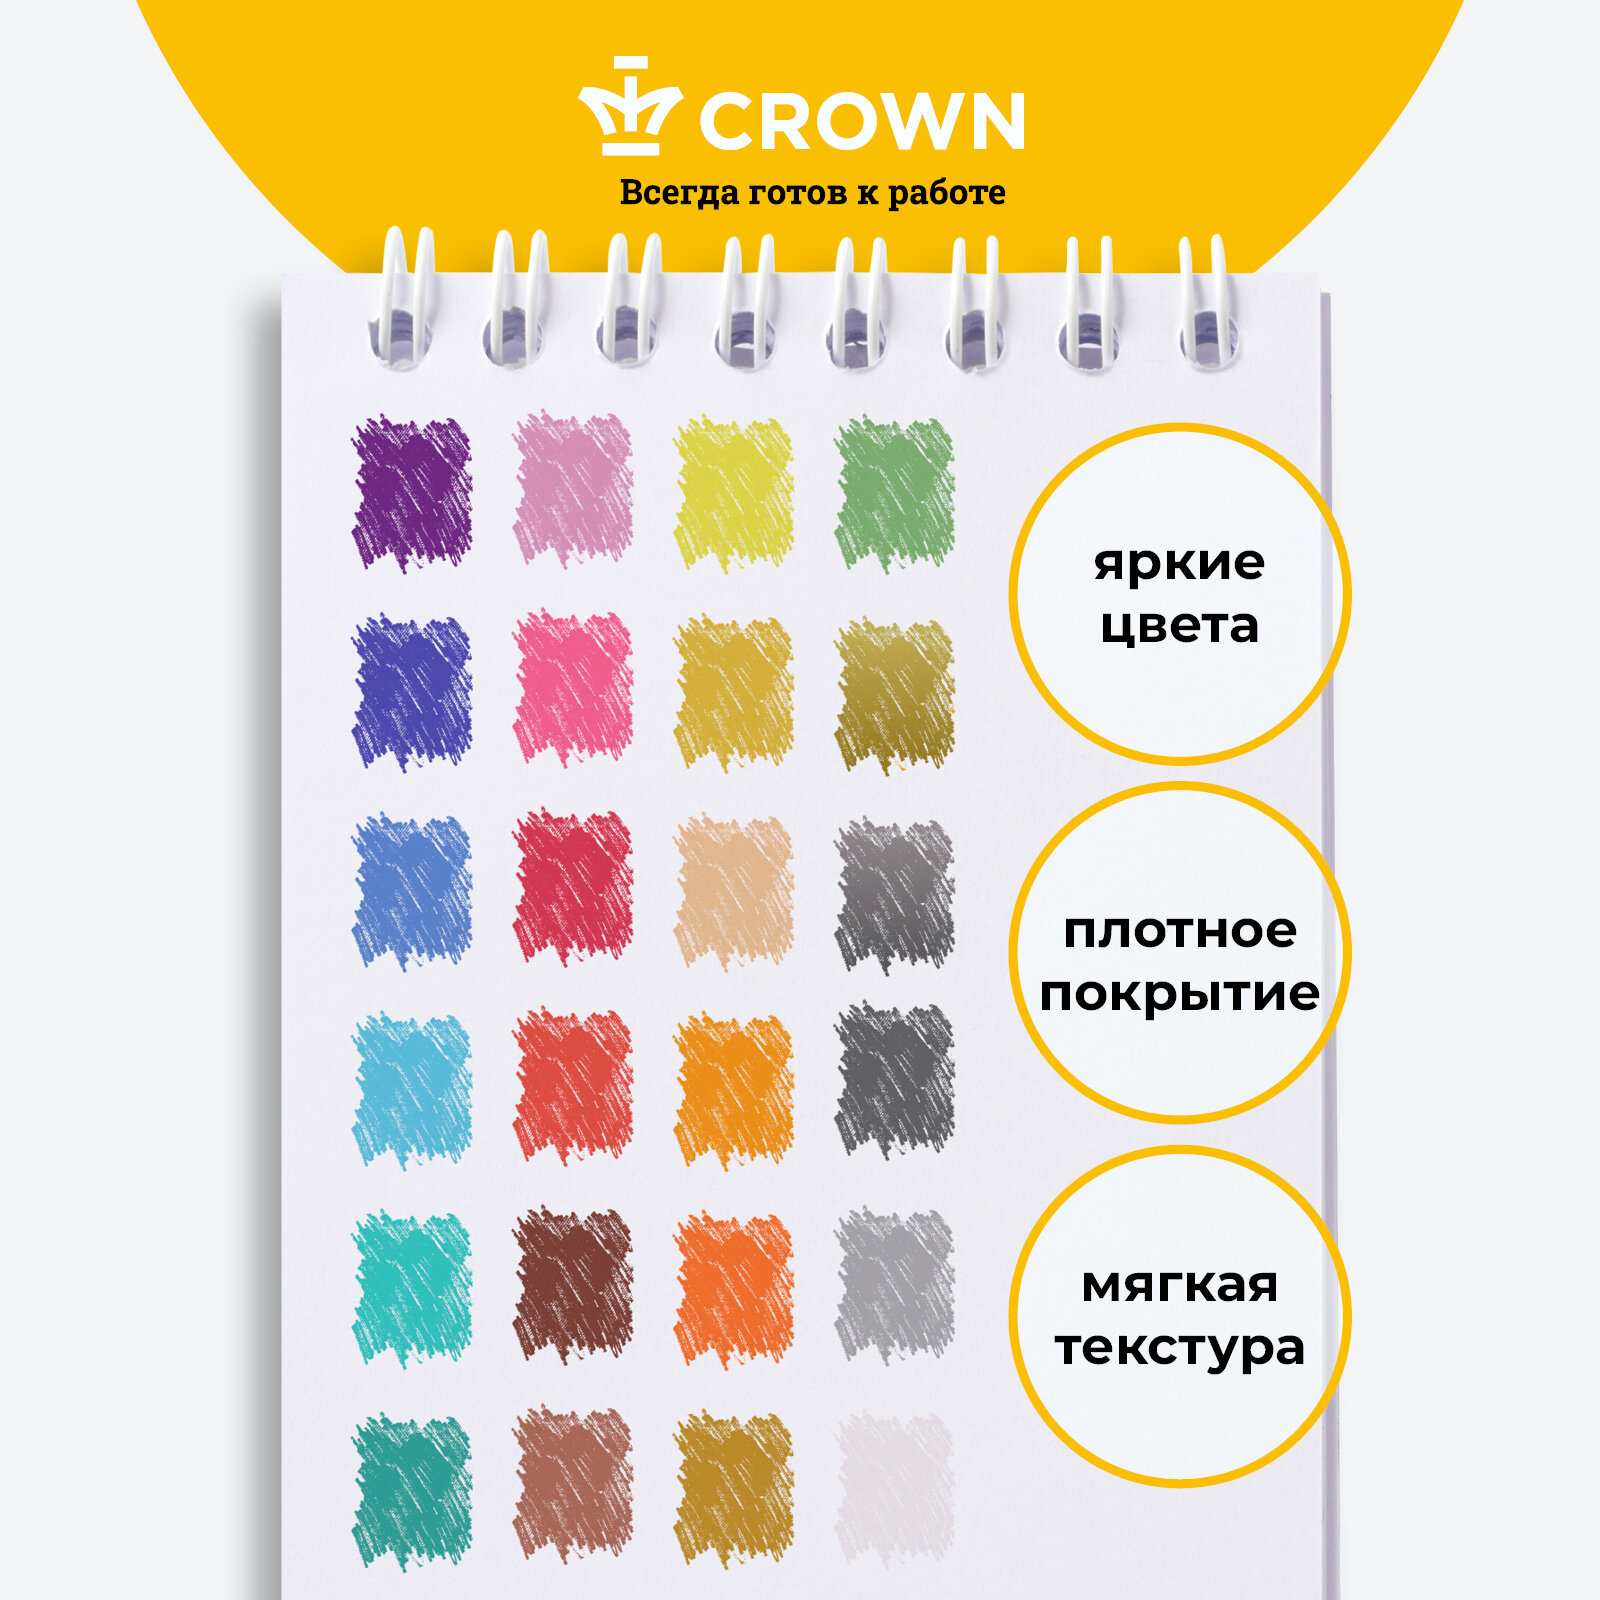 Карандаши цветные восковые для рисования Crown "ArtStory" выкручивающиеся / Набор карандашей из 24 цветов / для творчества детей, для школы и детского сада